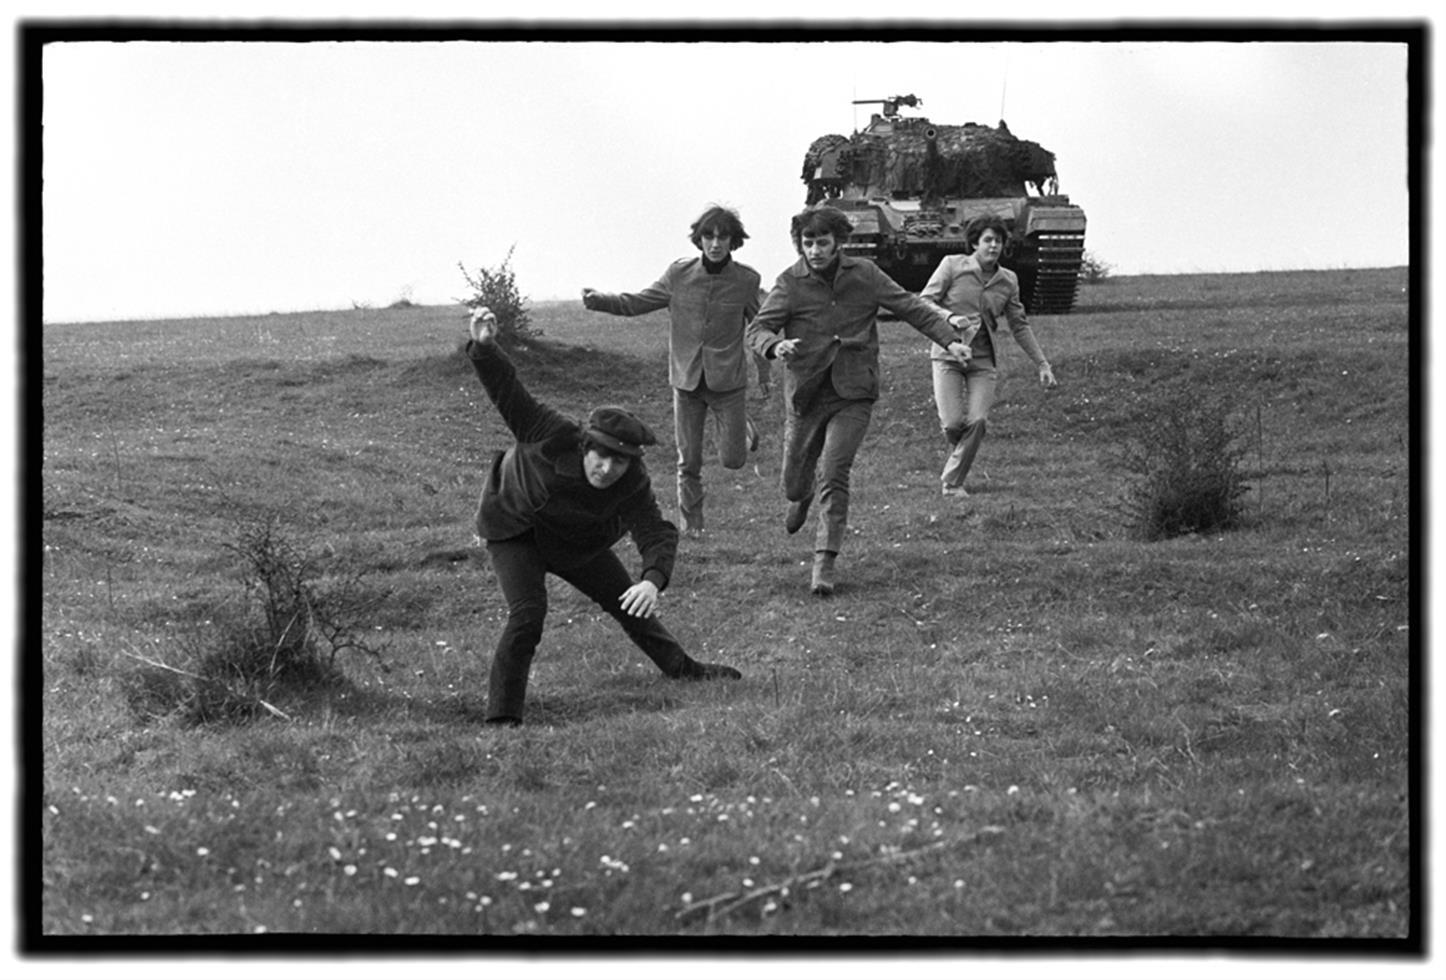 Emilio Lari Black and White Photograph - The Beatles